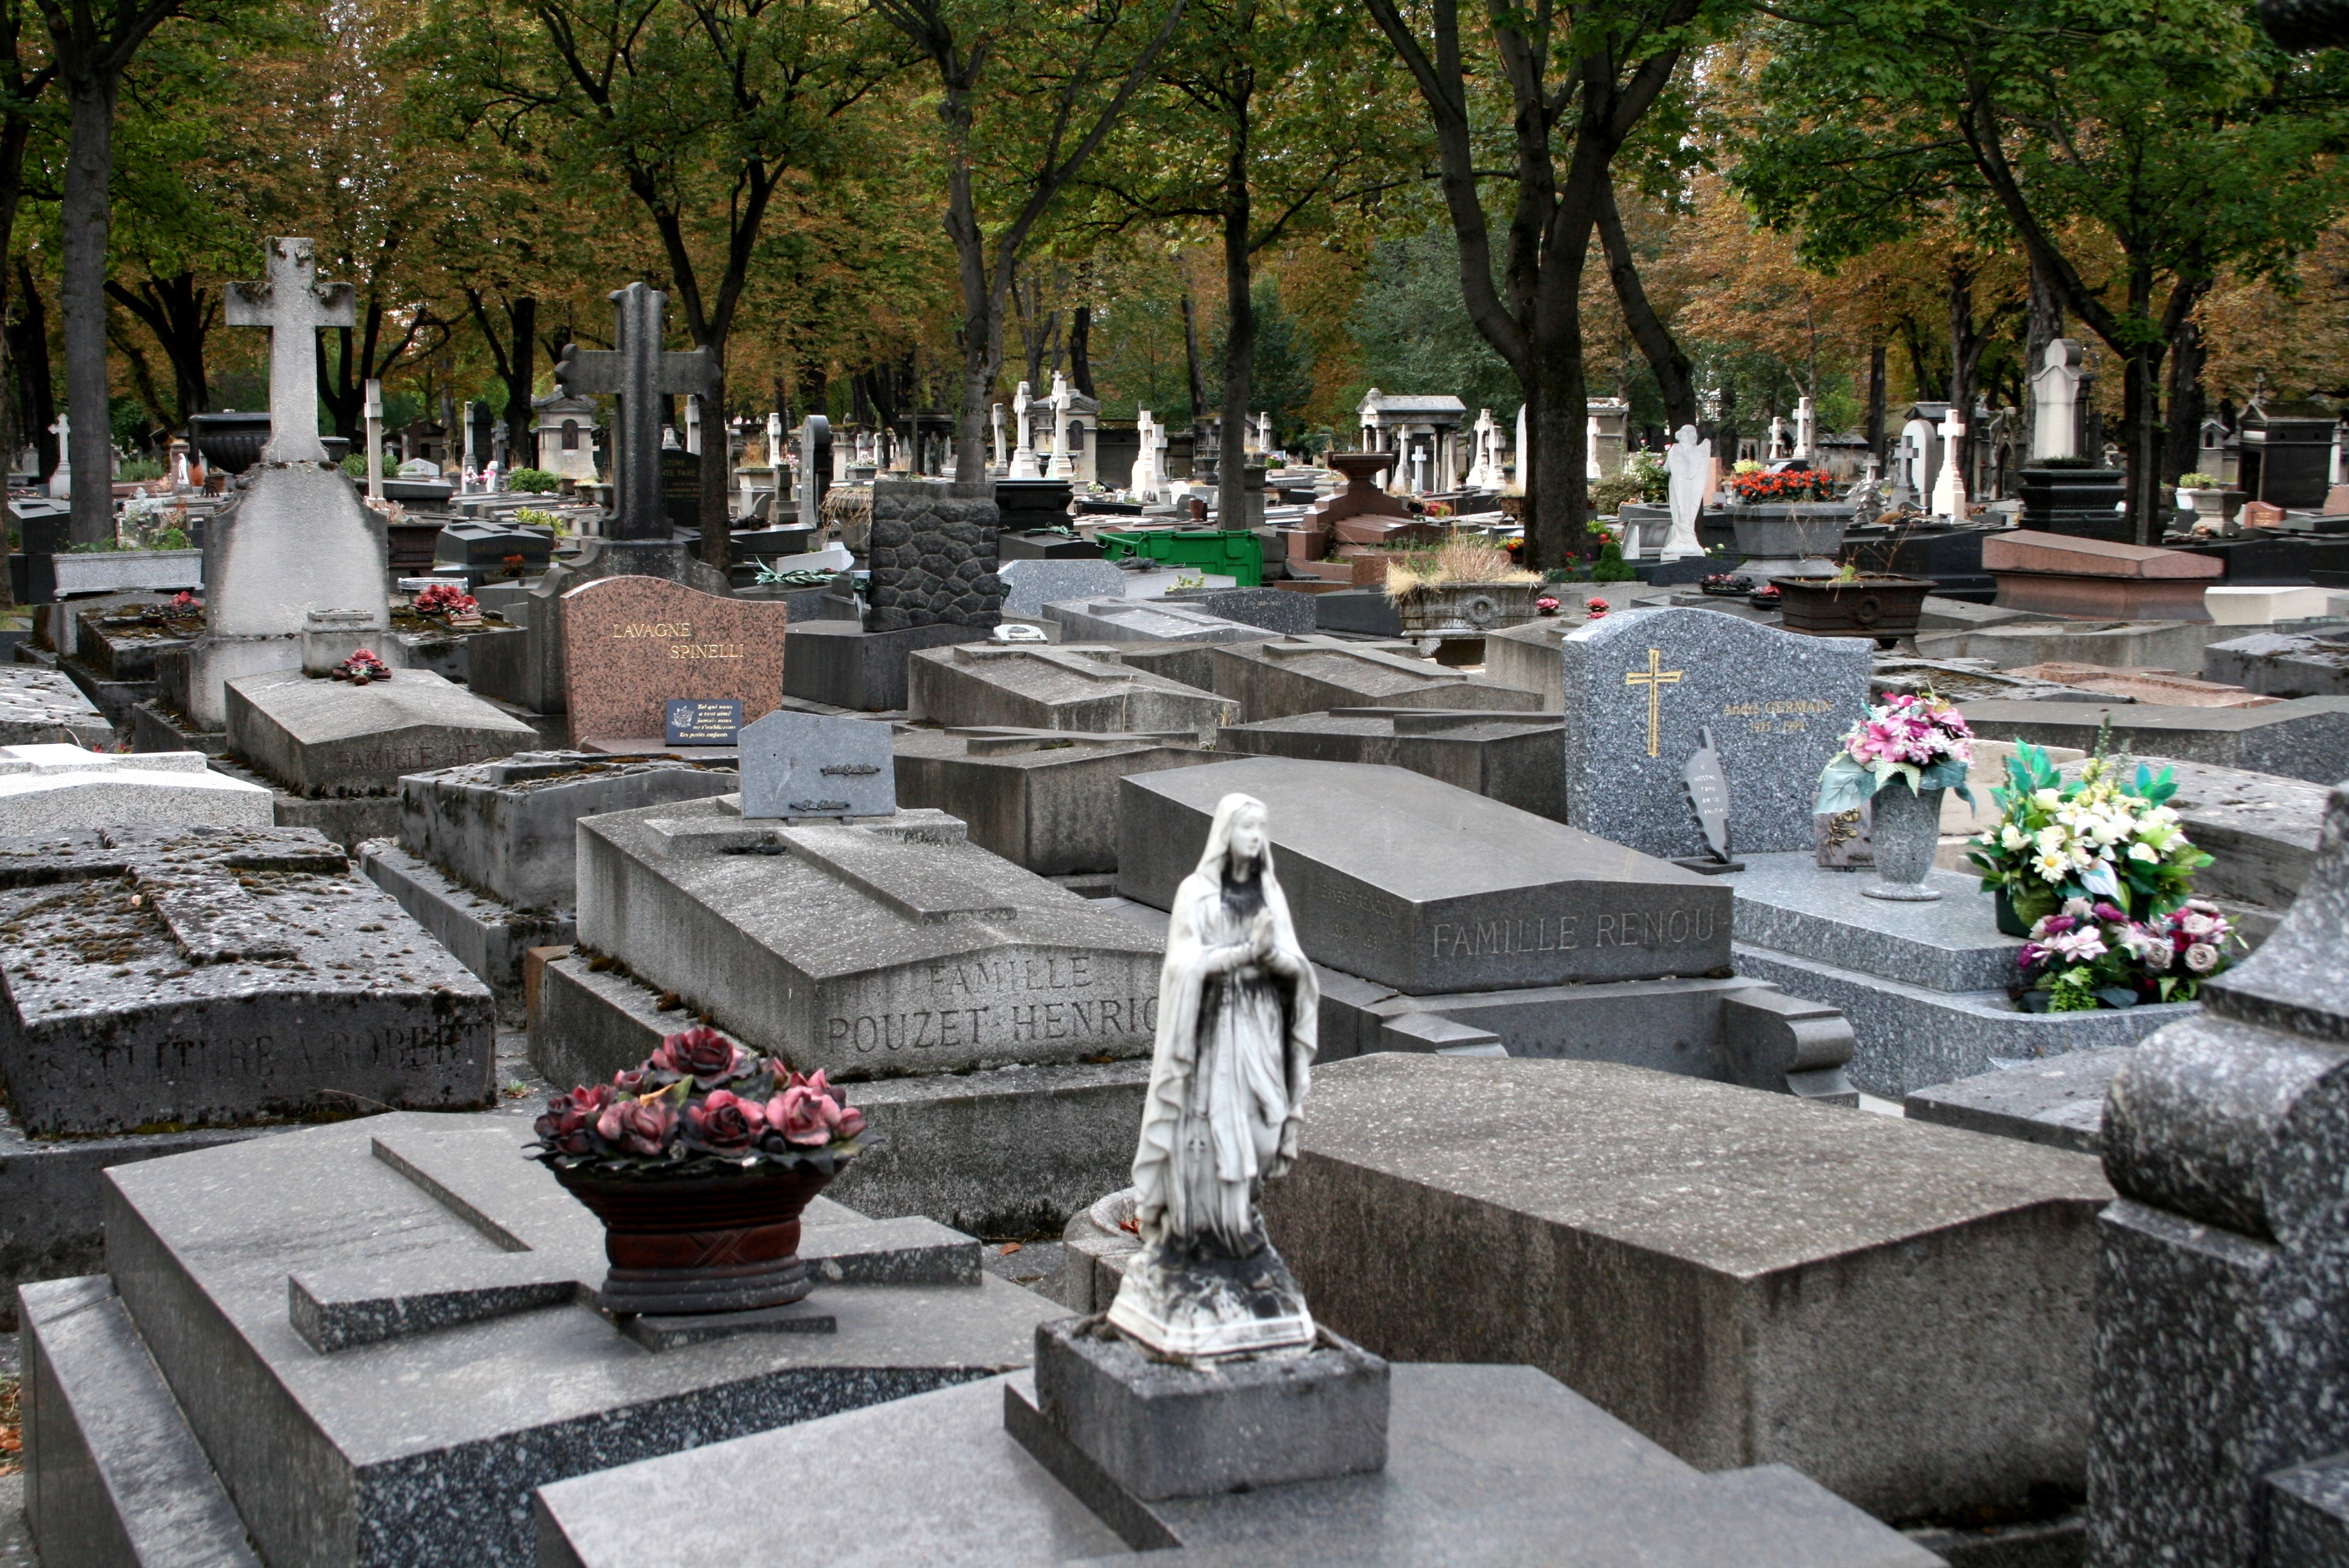 Кладбище Батиньоль в Париже. Могила Шаляпина кладбище Батиньоль в Париже. Могила Федора Шаляпина. Шаляпин похоронен